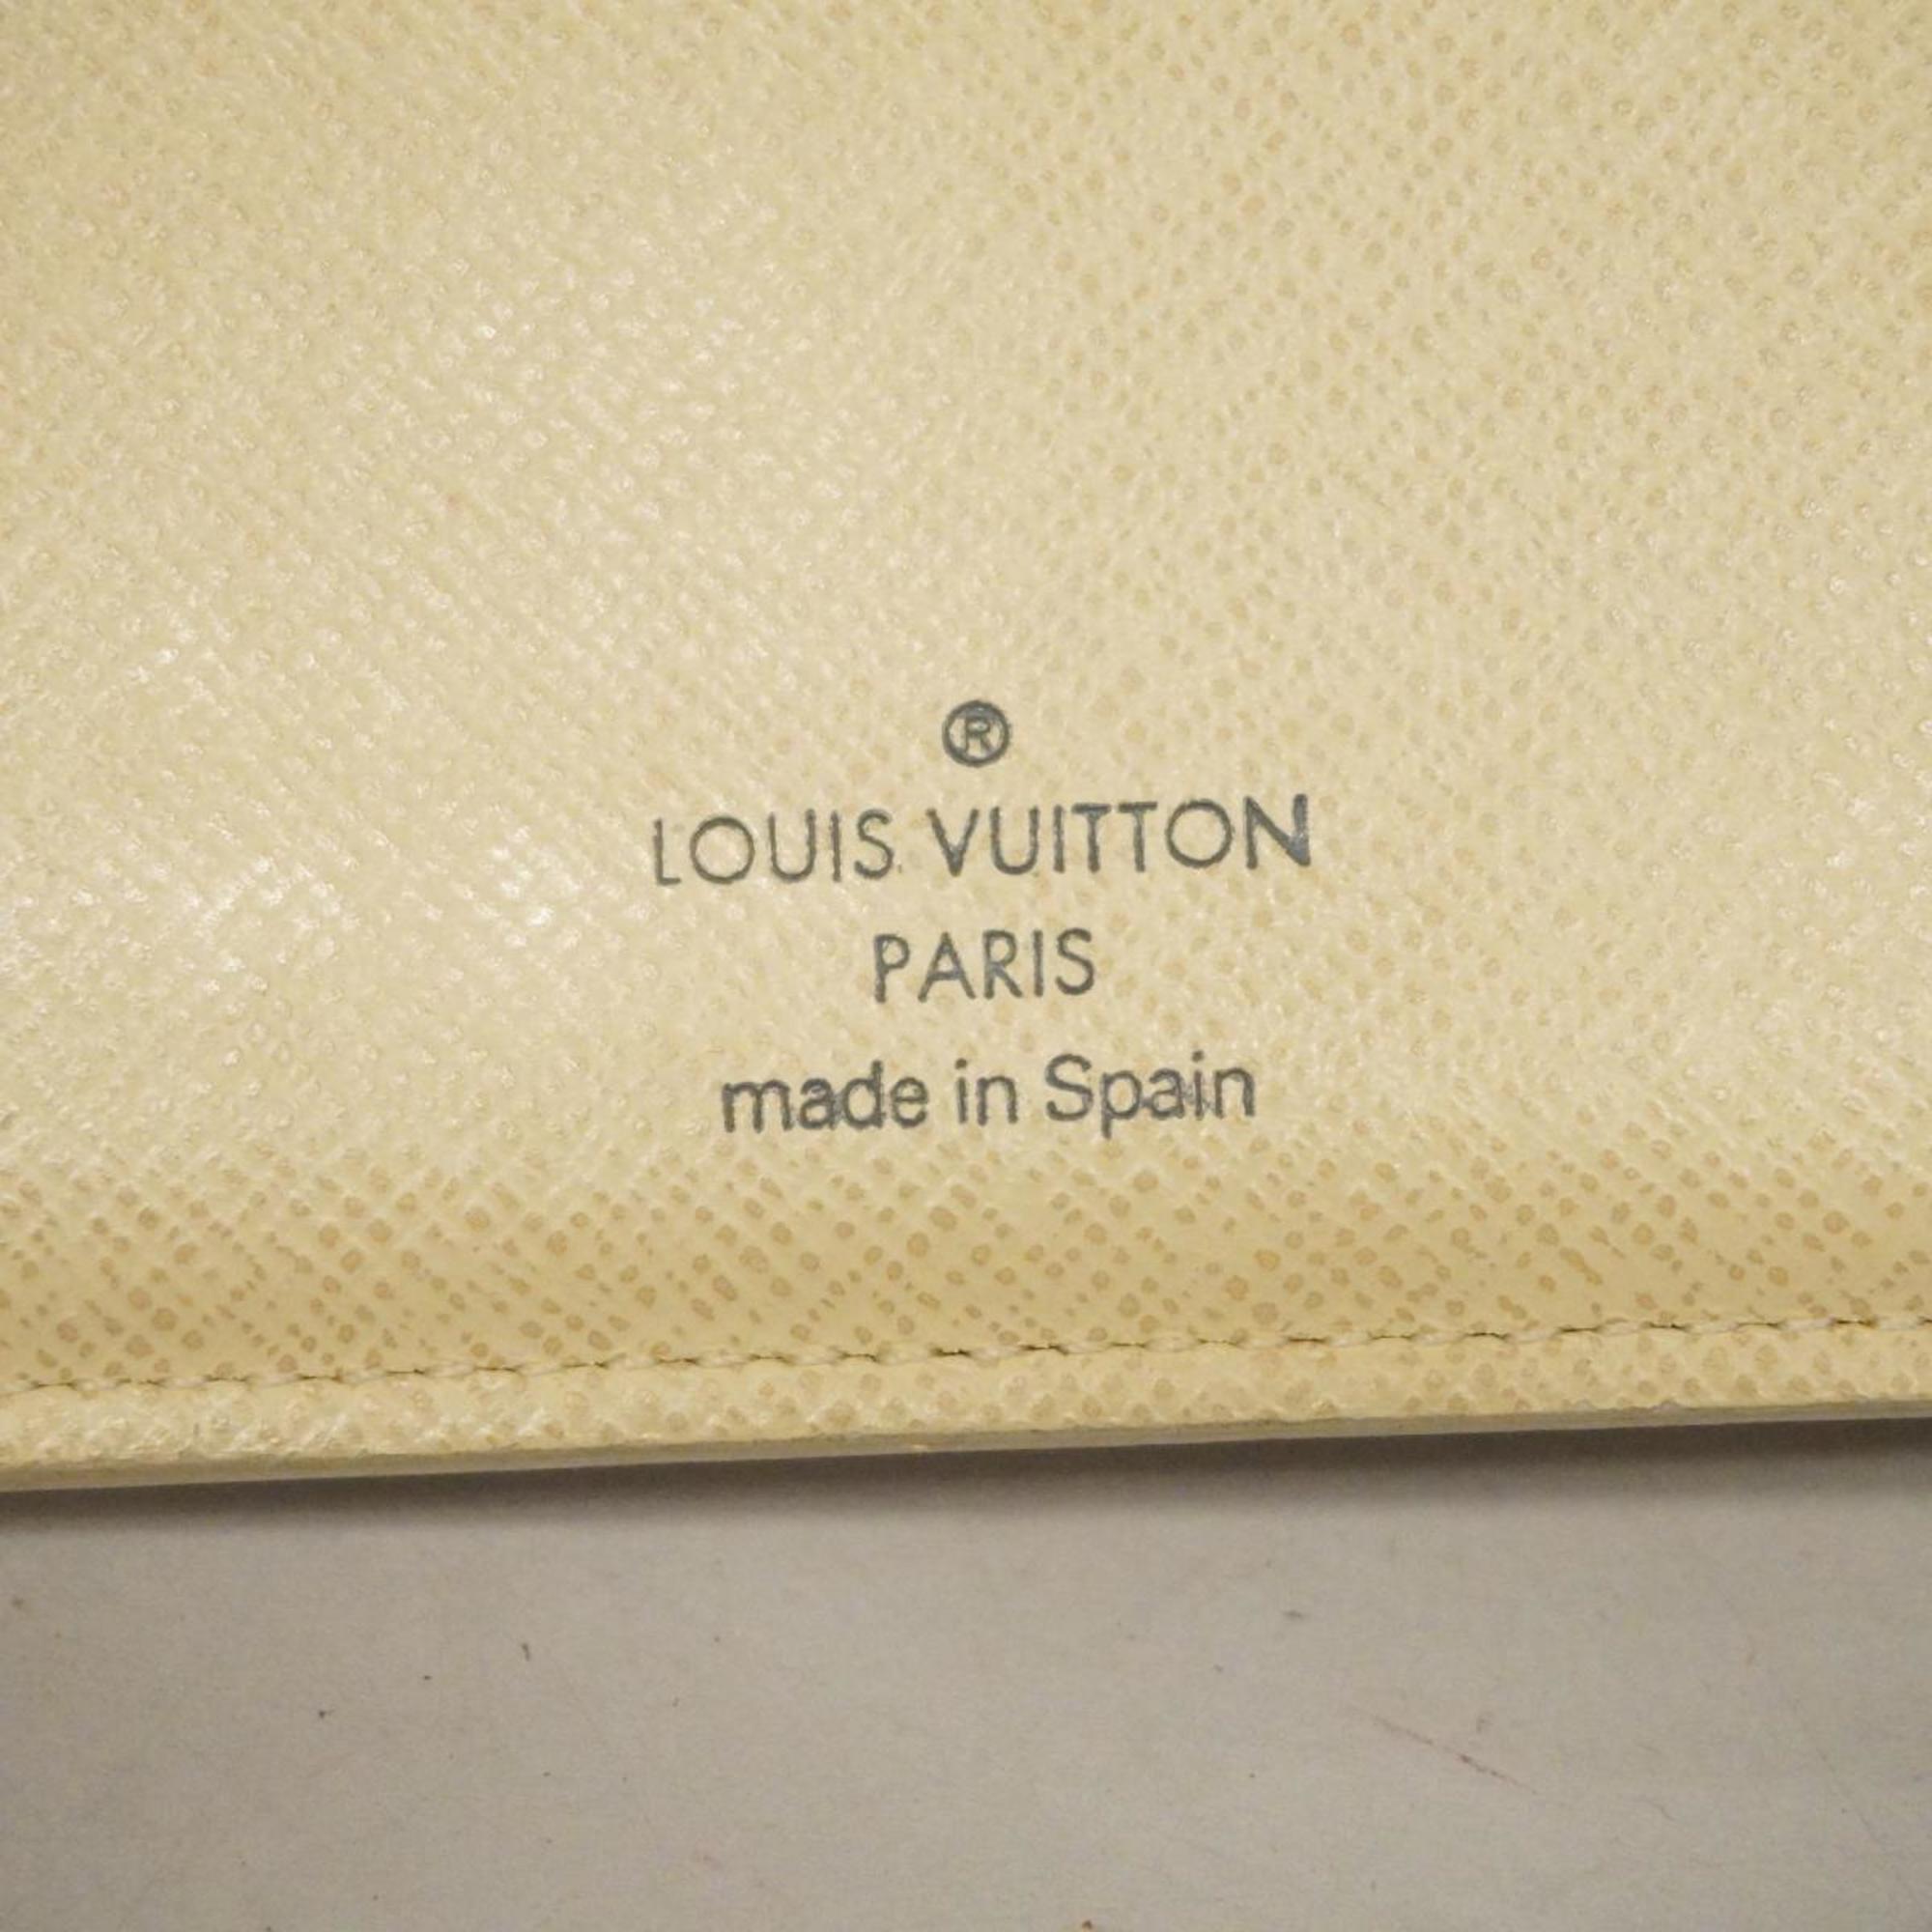 ルイ・ヴィトン(Louis Vuitton) ルイ・ヴィトン 財布 ダミエ・アズール ポルトフォイユマルコ N60018 ホワイトメンズ レディース